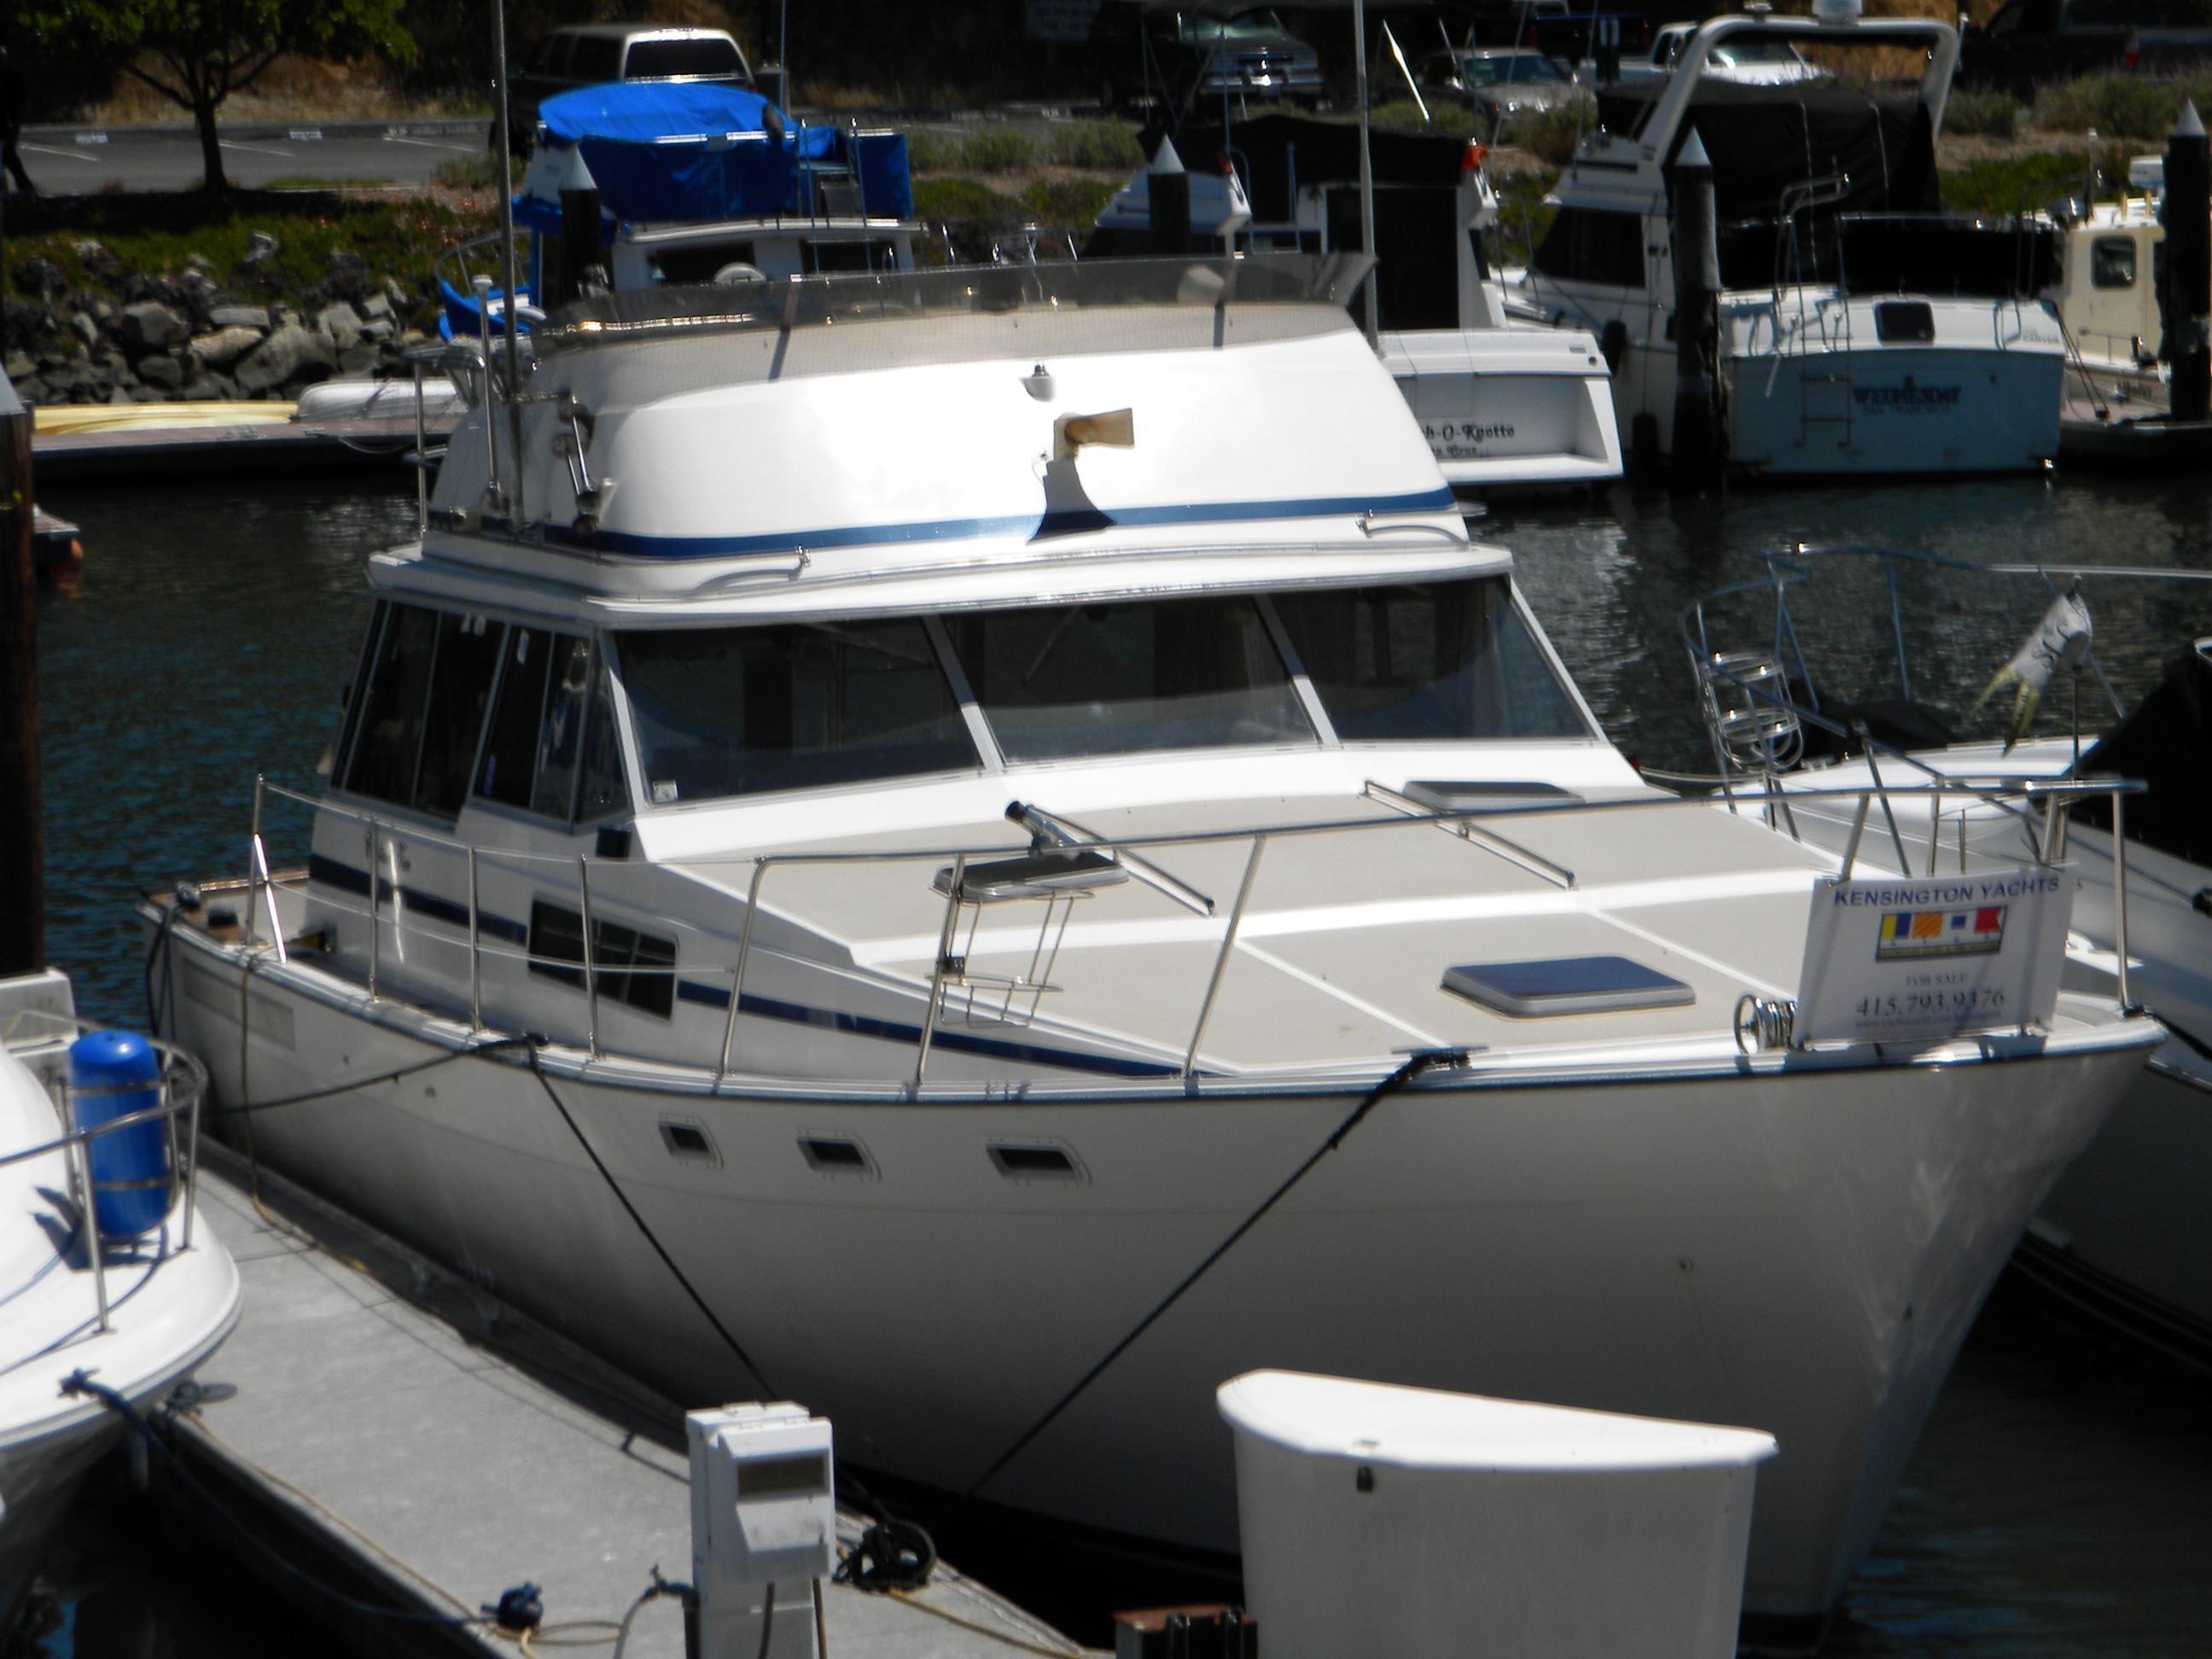 Bayliner 3870 Motoryacht, Santa Cruz/transferable slip